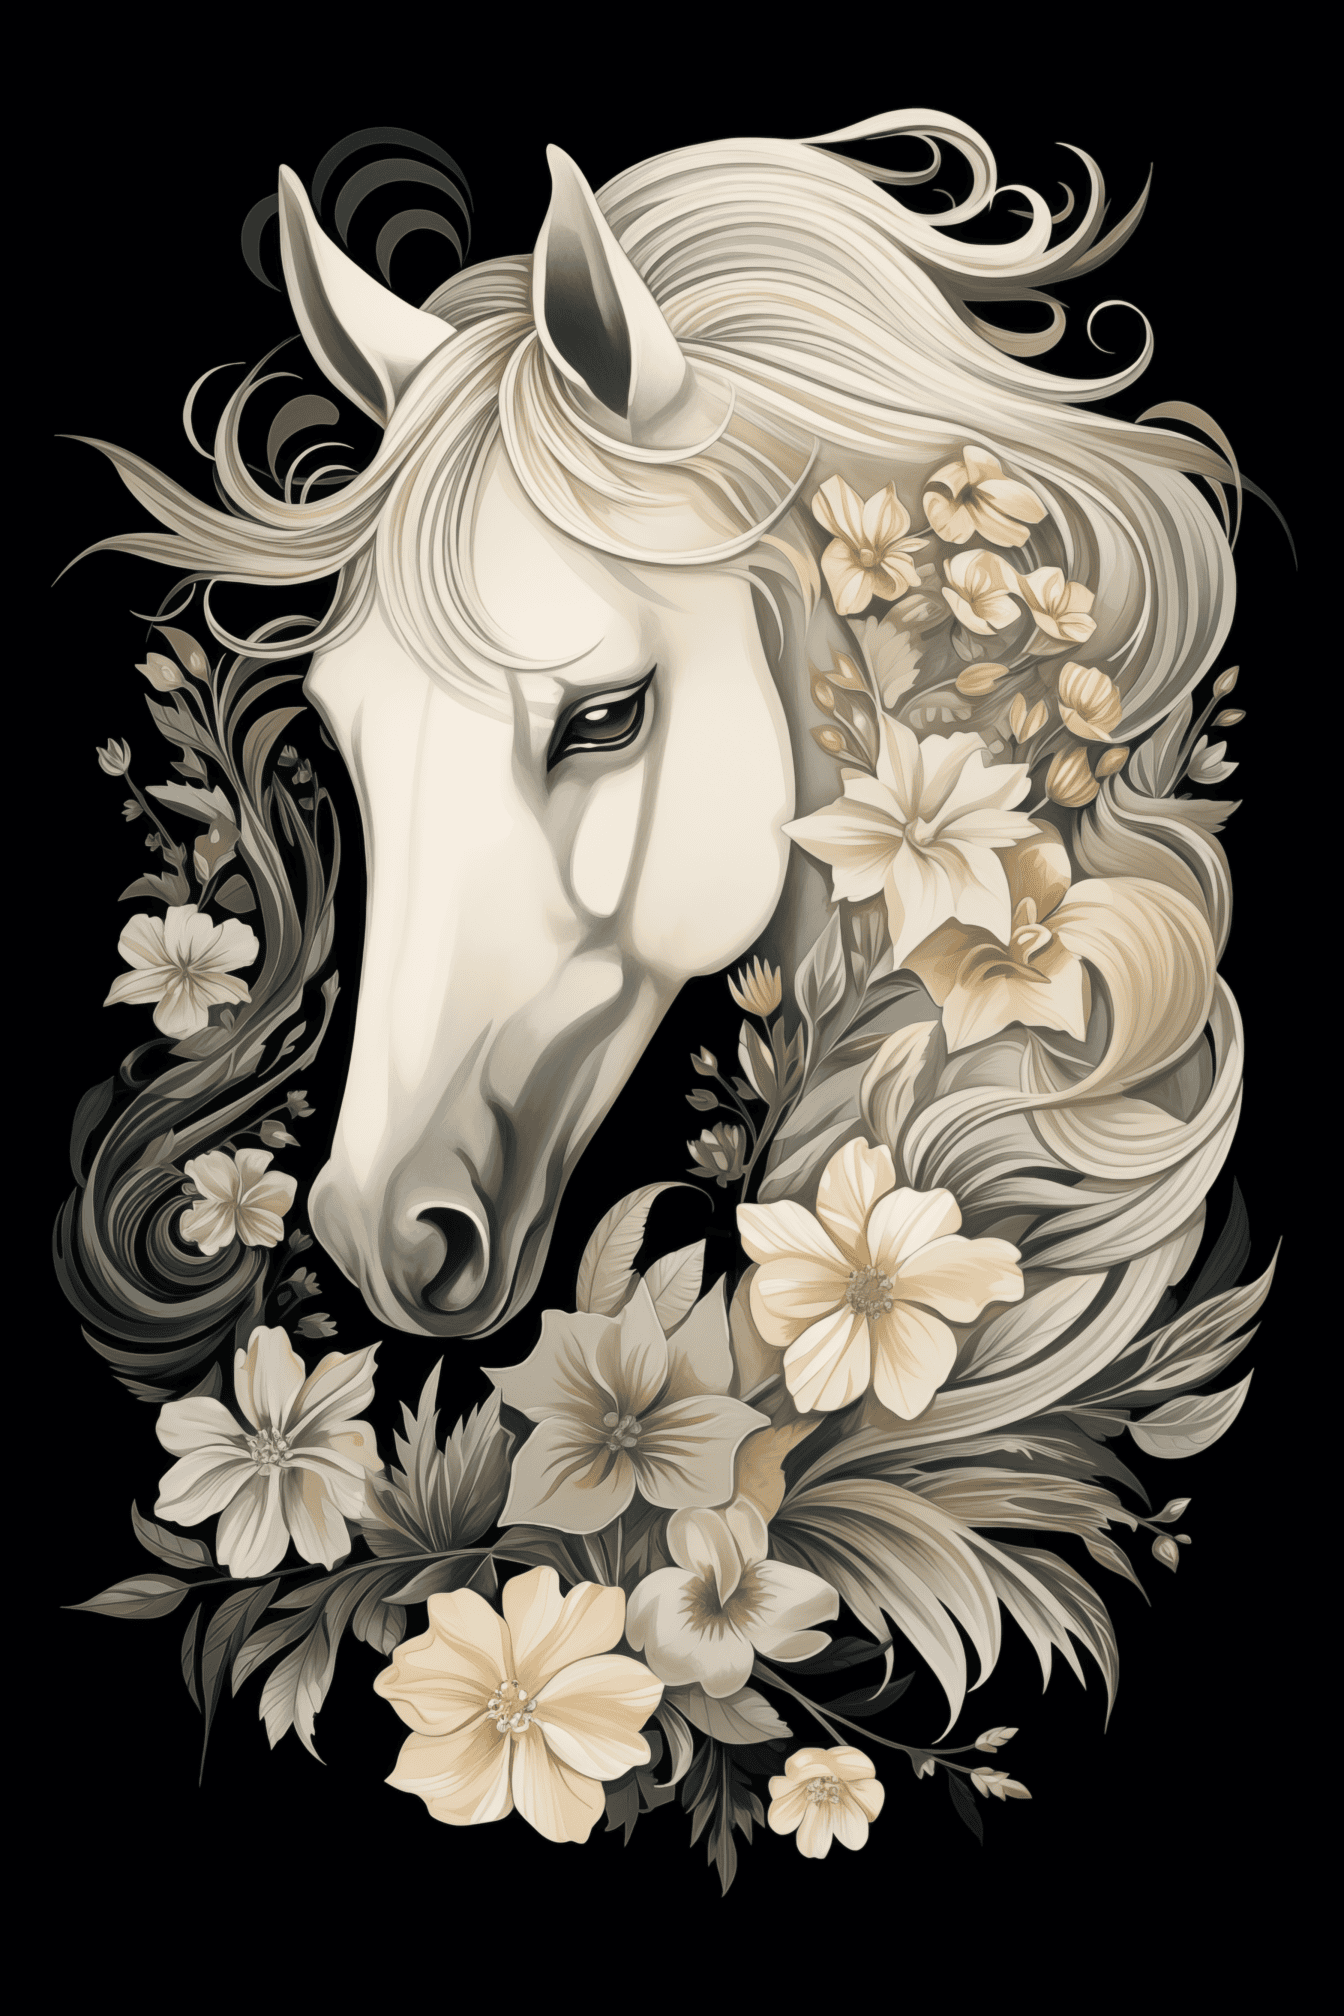 Minh họa đen trắng của một đầu ngựa trắng với trang trí hoa